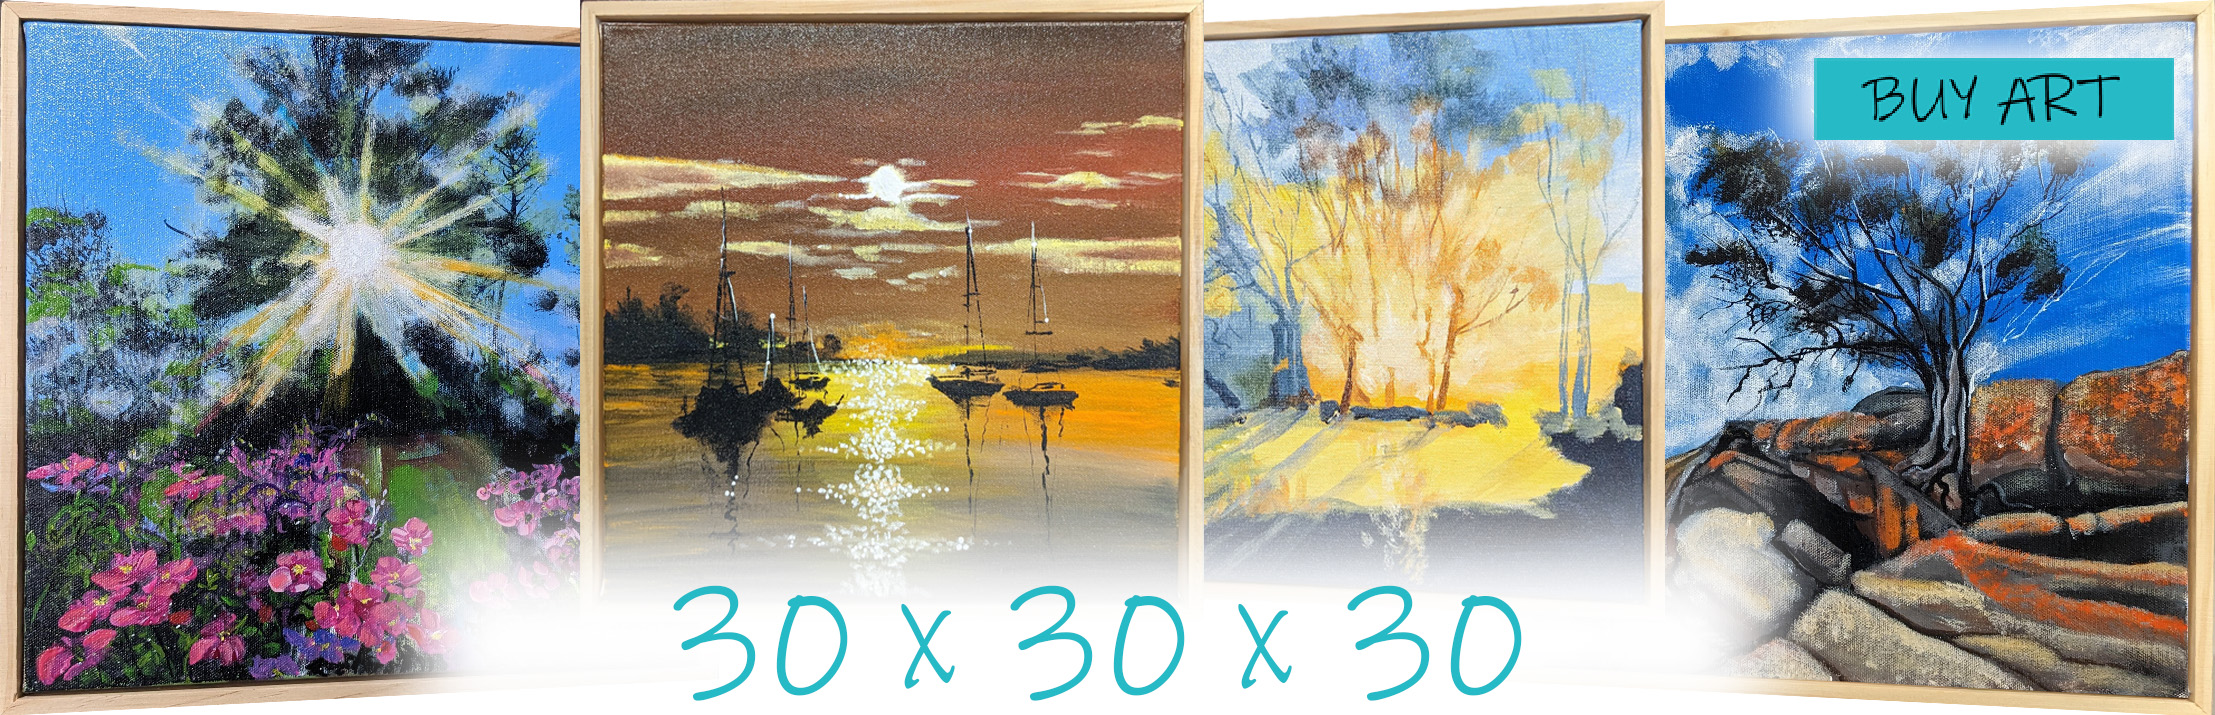 30x30x30 series by Marina Strijakova